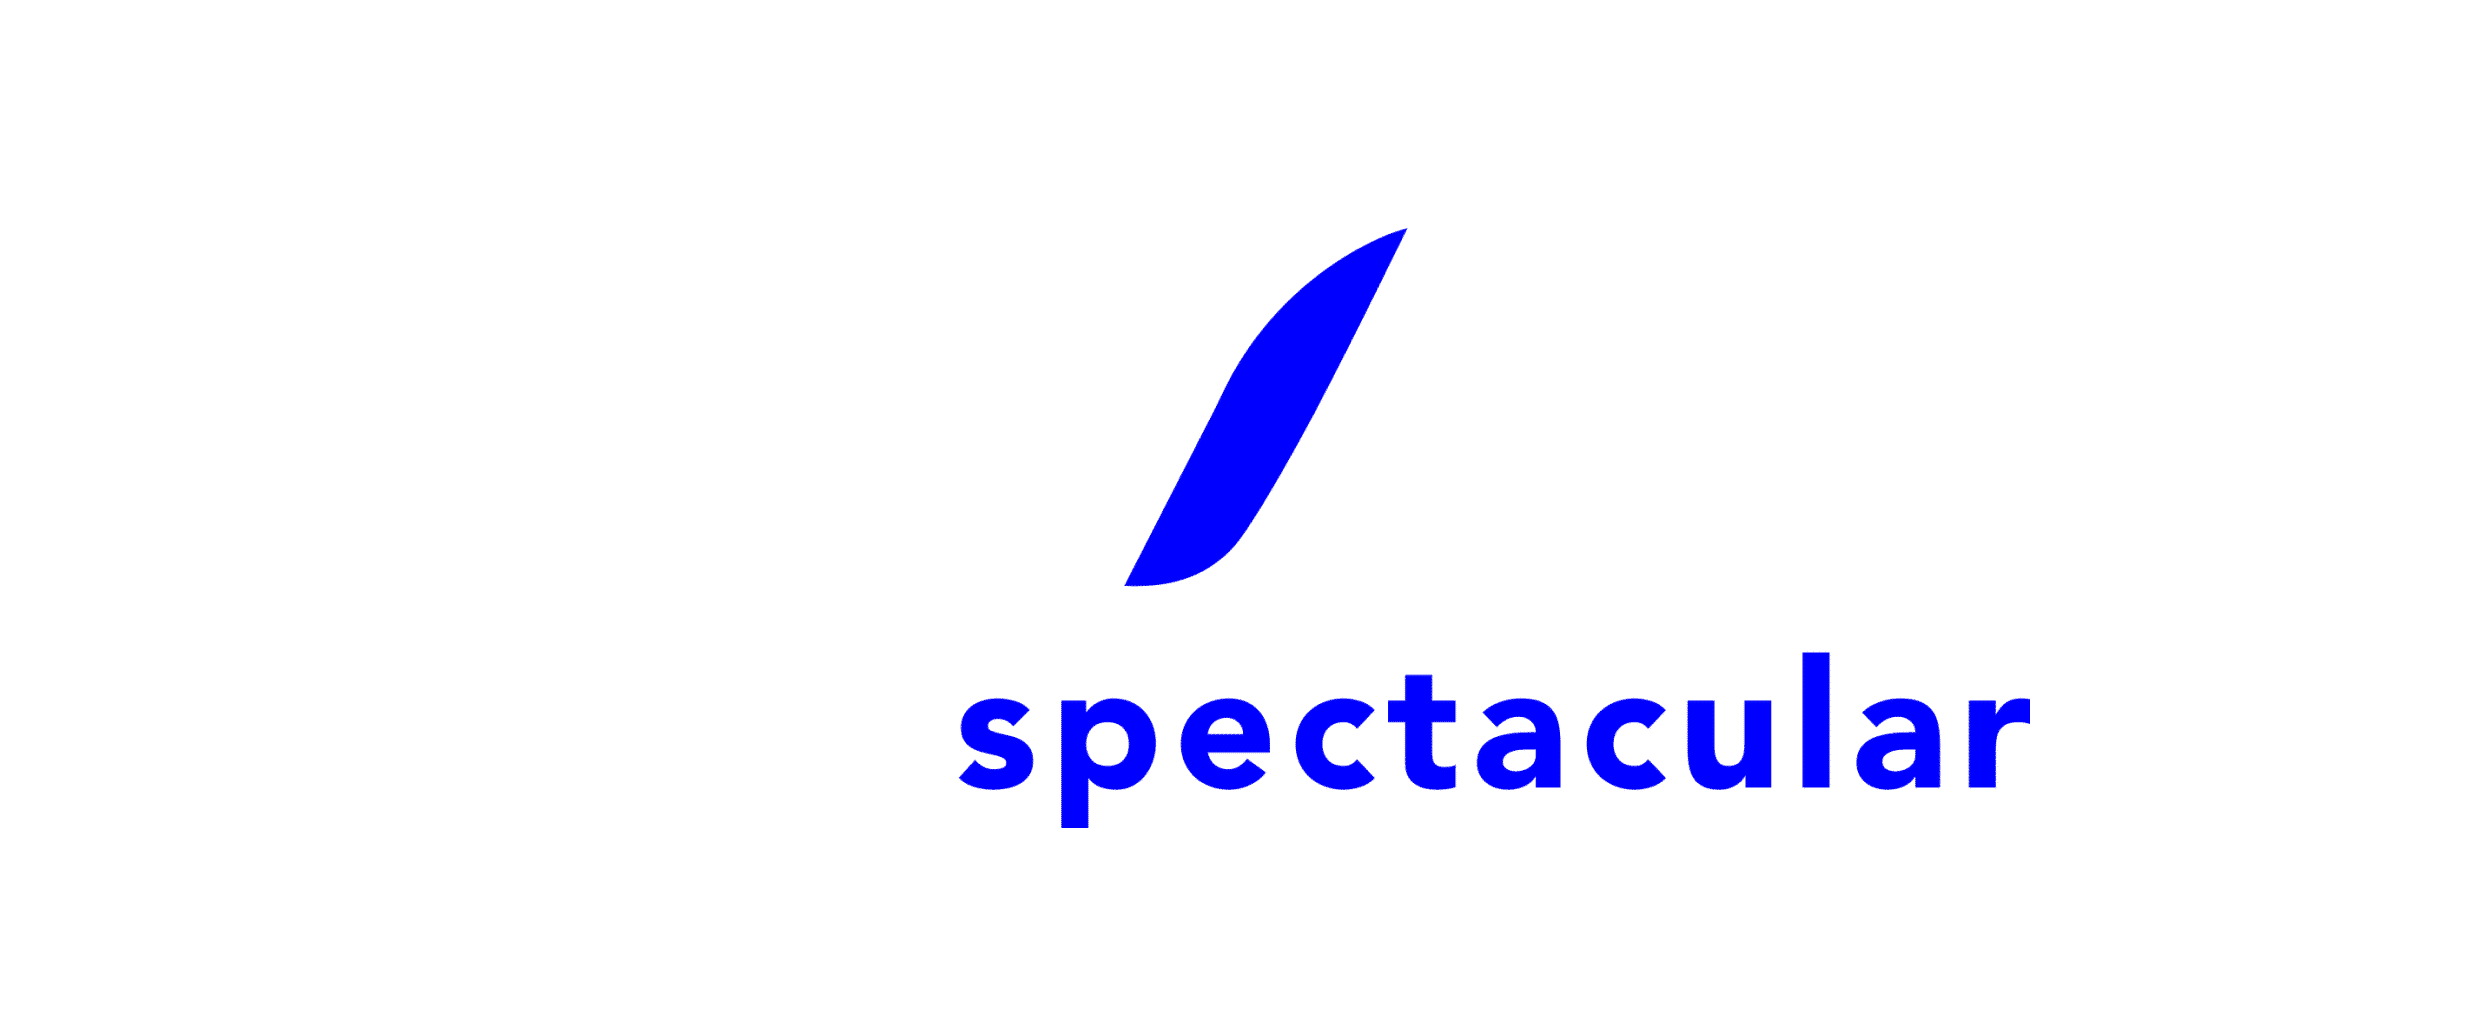 Eca2